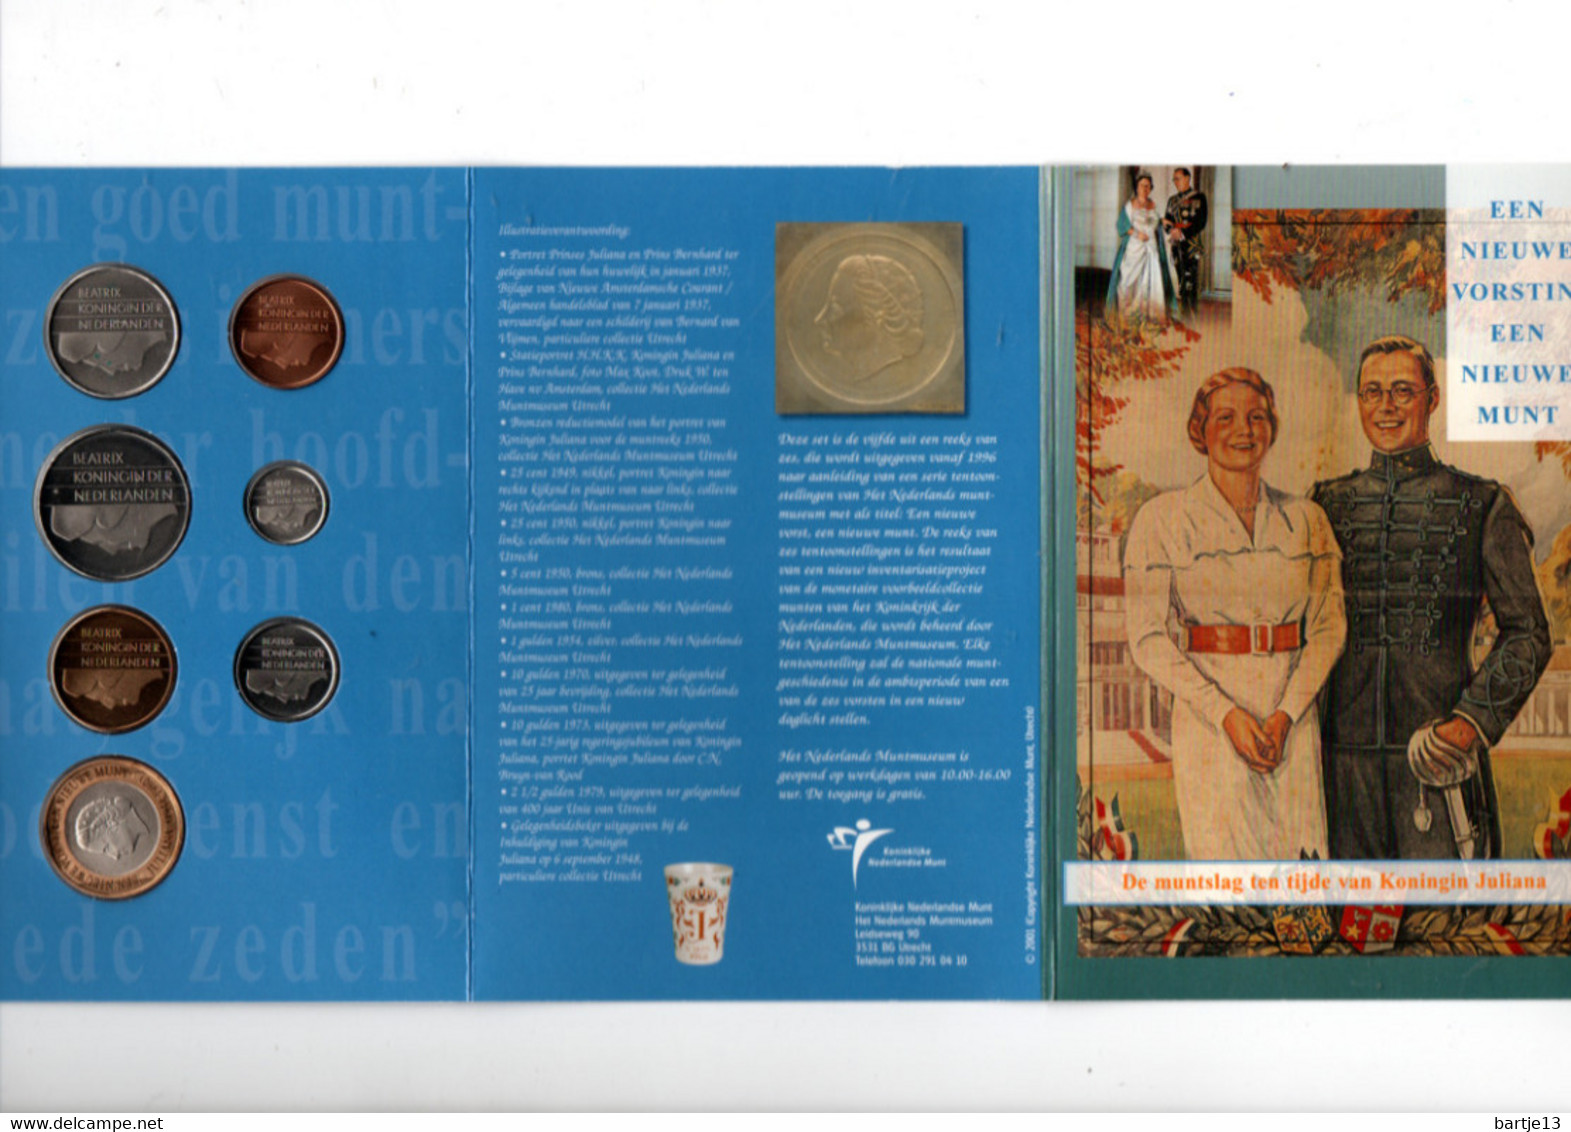 NEDERLAND MUNTSET 2001 MUNTSLAG TEN TIJDE VAN KONINGIN JULIANA - Trade Coins